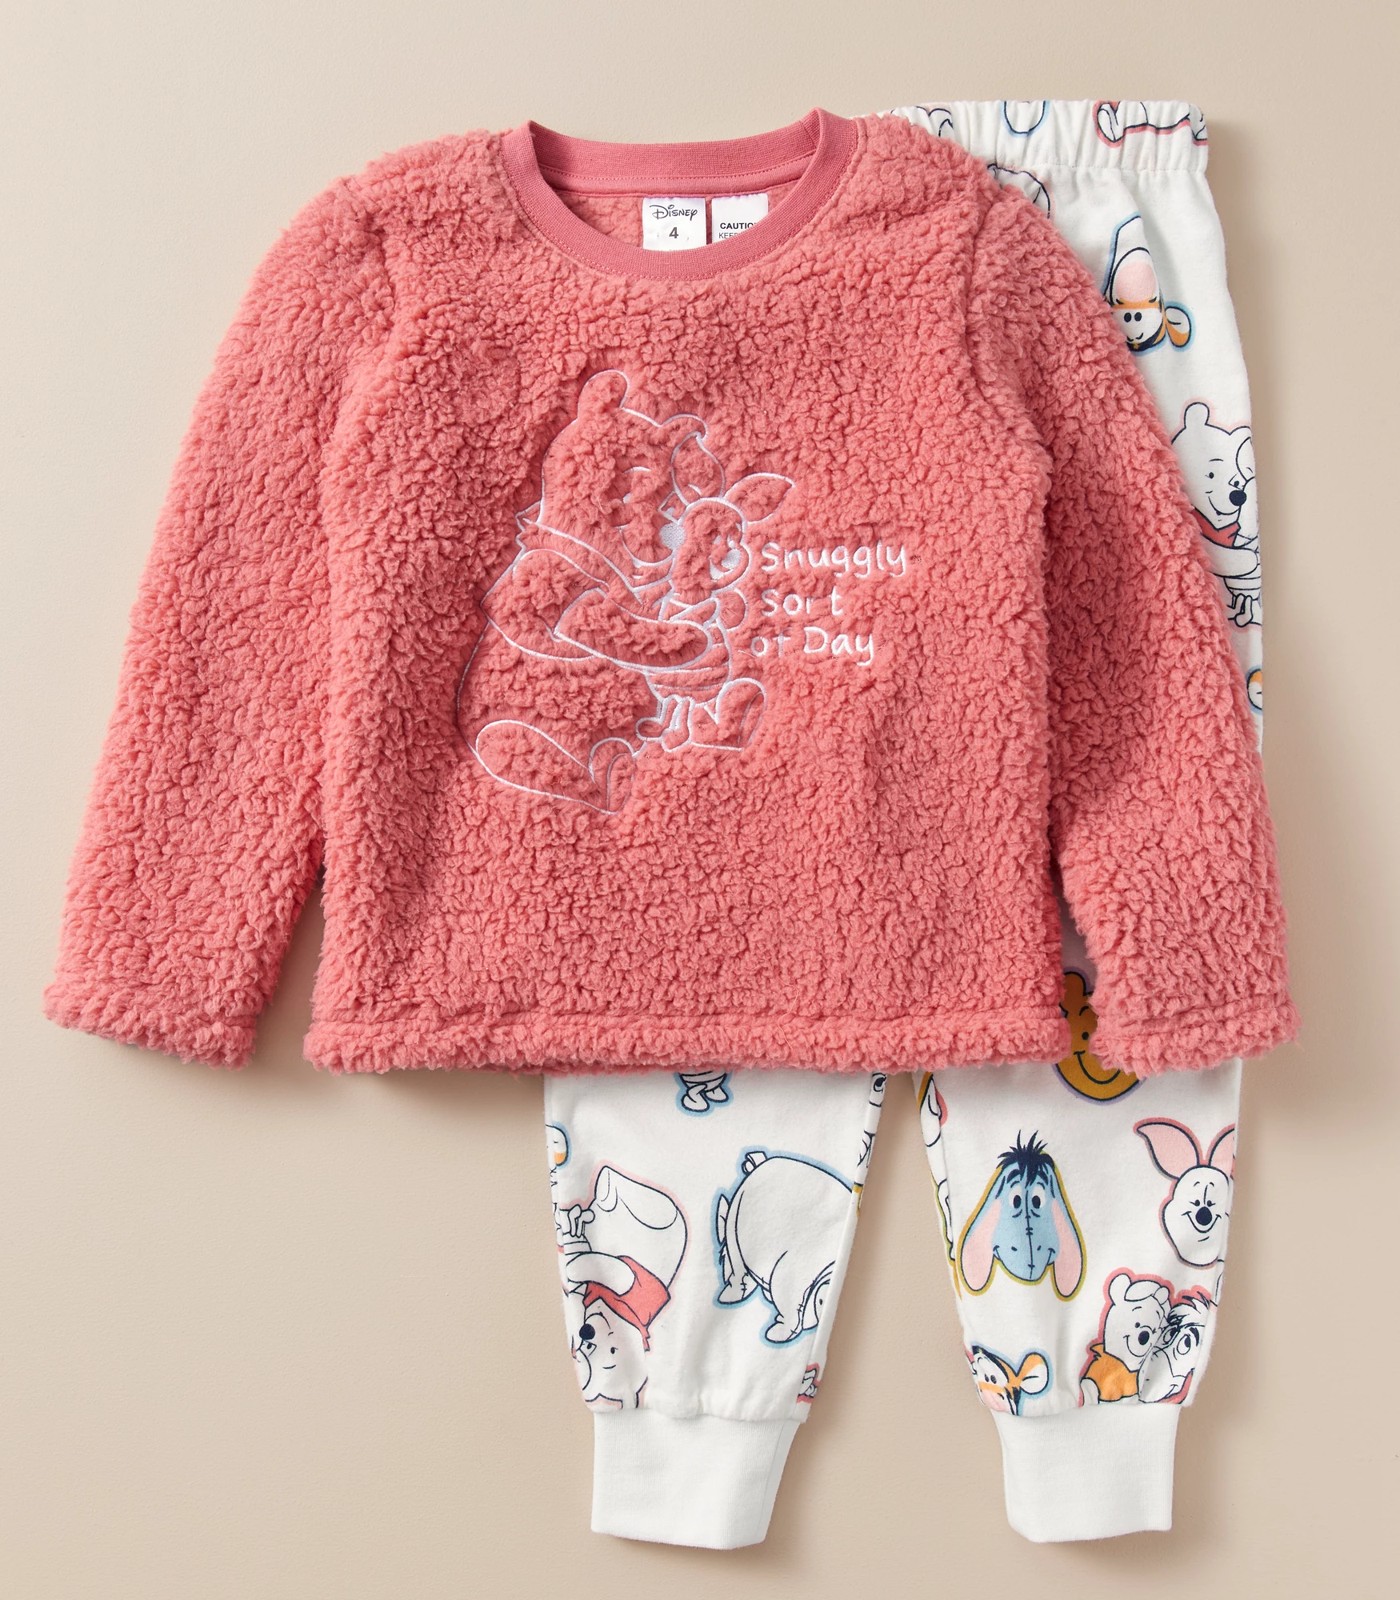 Christmas Pooh Matching Family Pajamas Set, Disney Winnie The Pooh